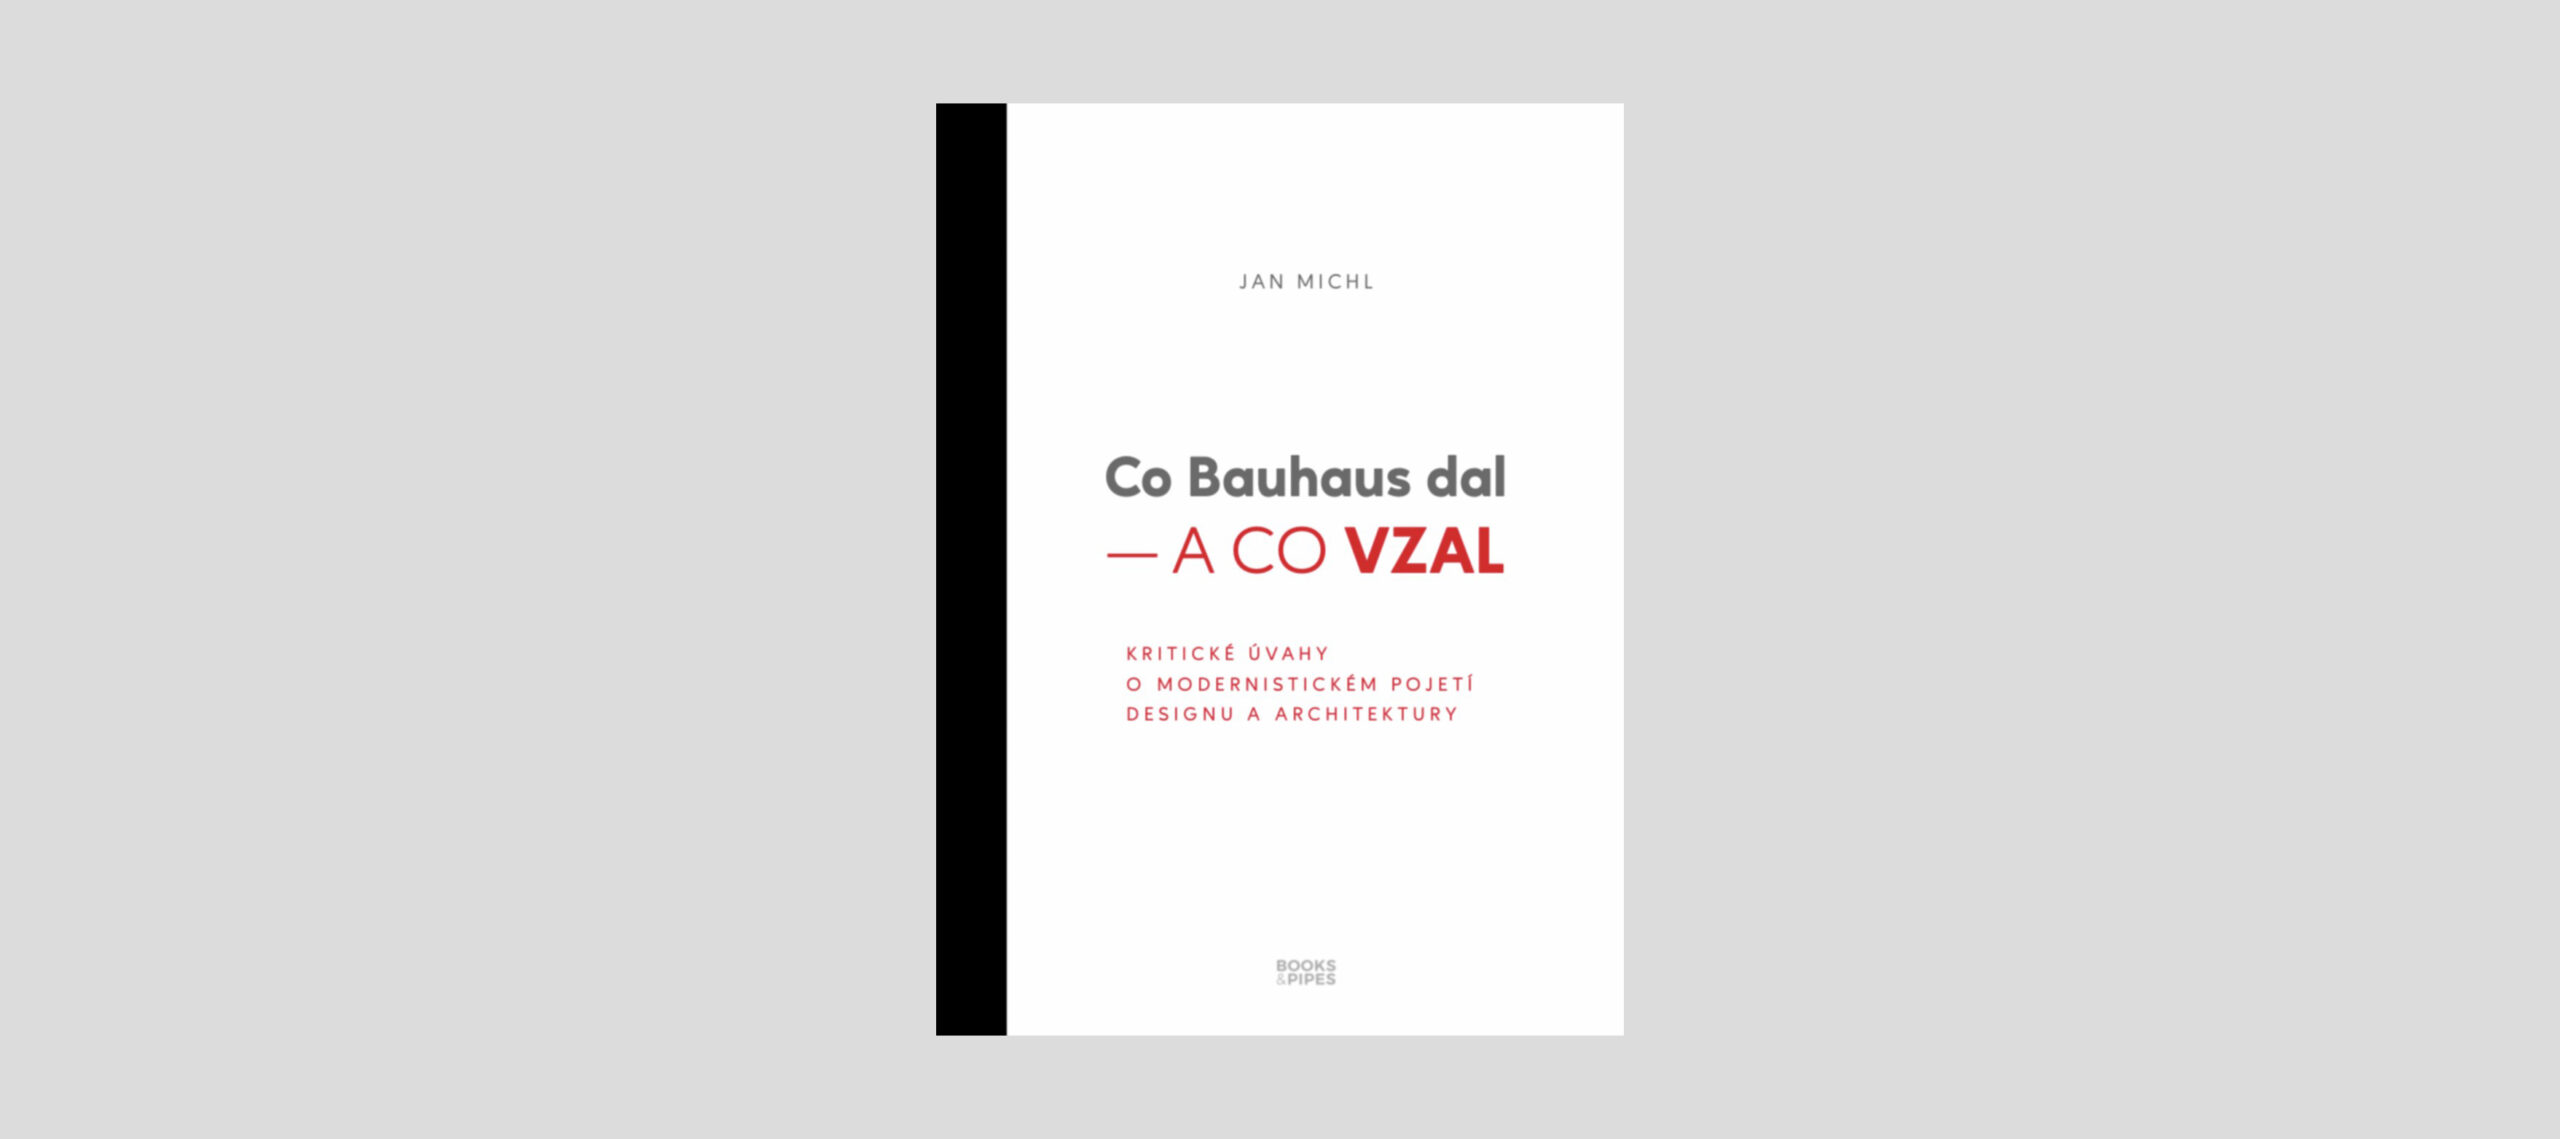 Jan Michl: Co Bauhaus dal – A CO VZAL. Kritické úvahy o modernistickém pojetí designu a architektury. Brno: Books & Pipes, 2020, 300 s. ISBN 978-80-7485-222-0.